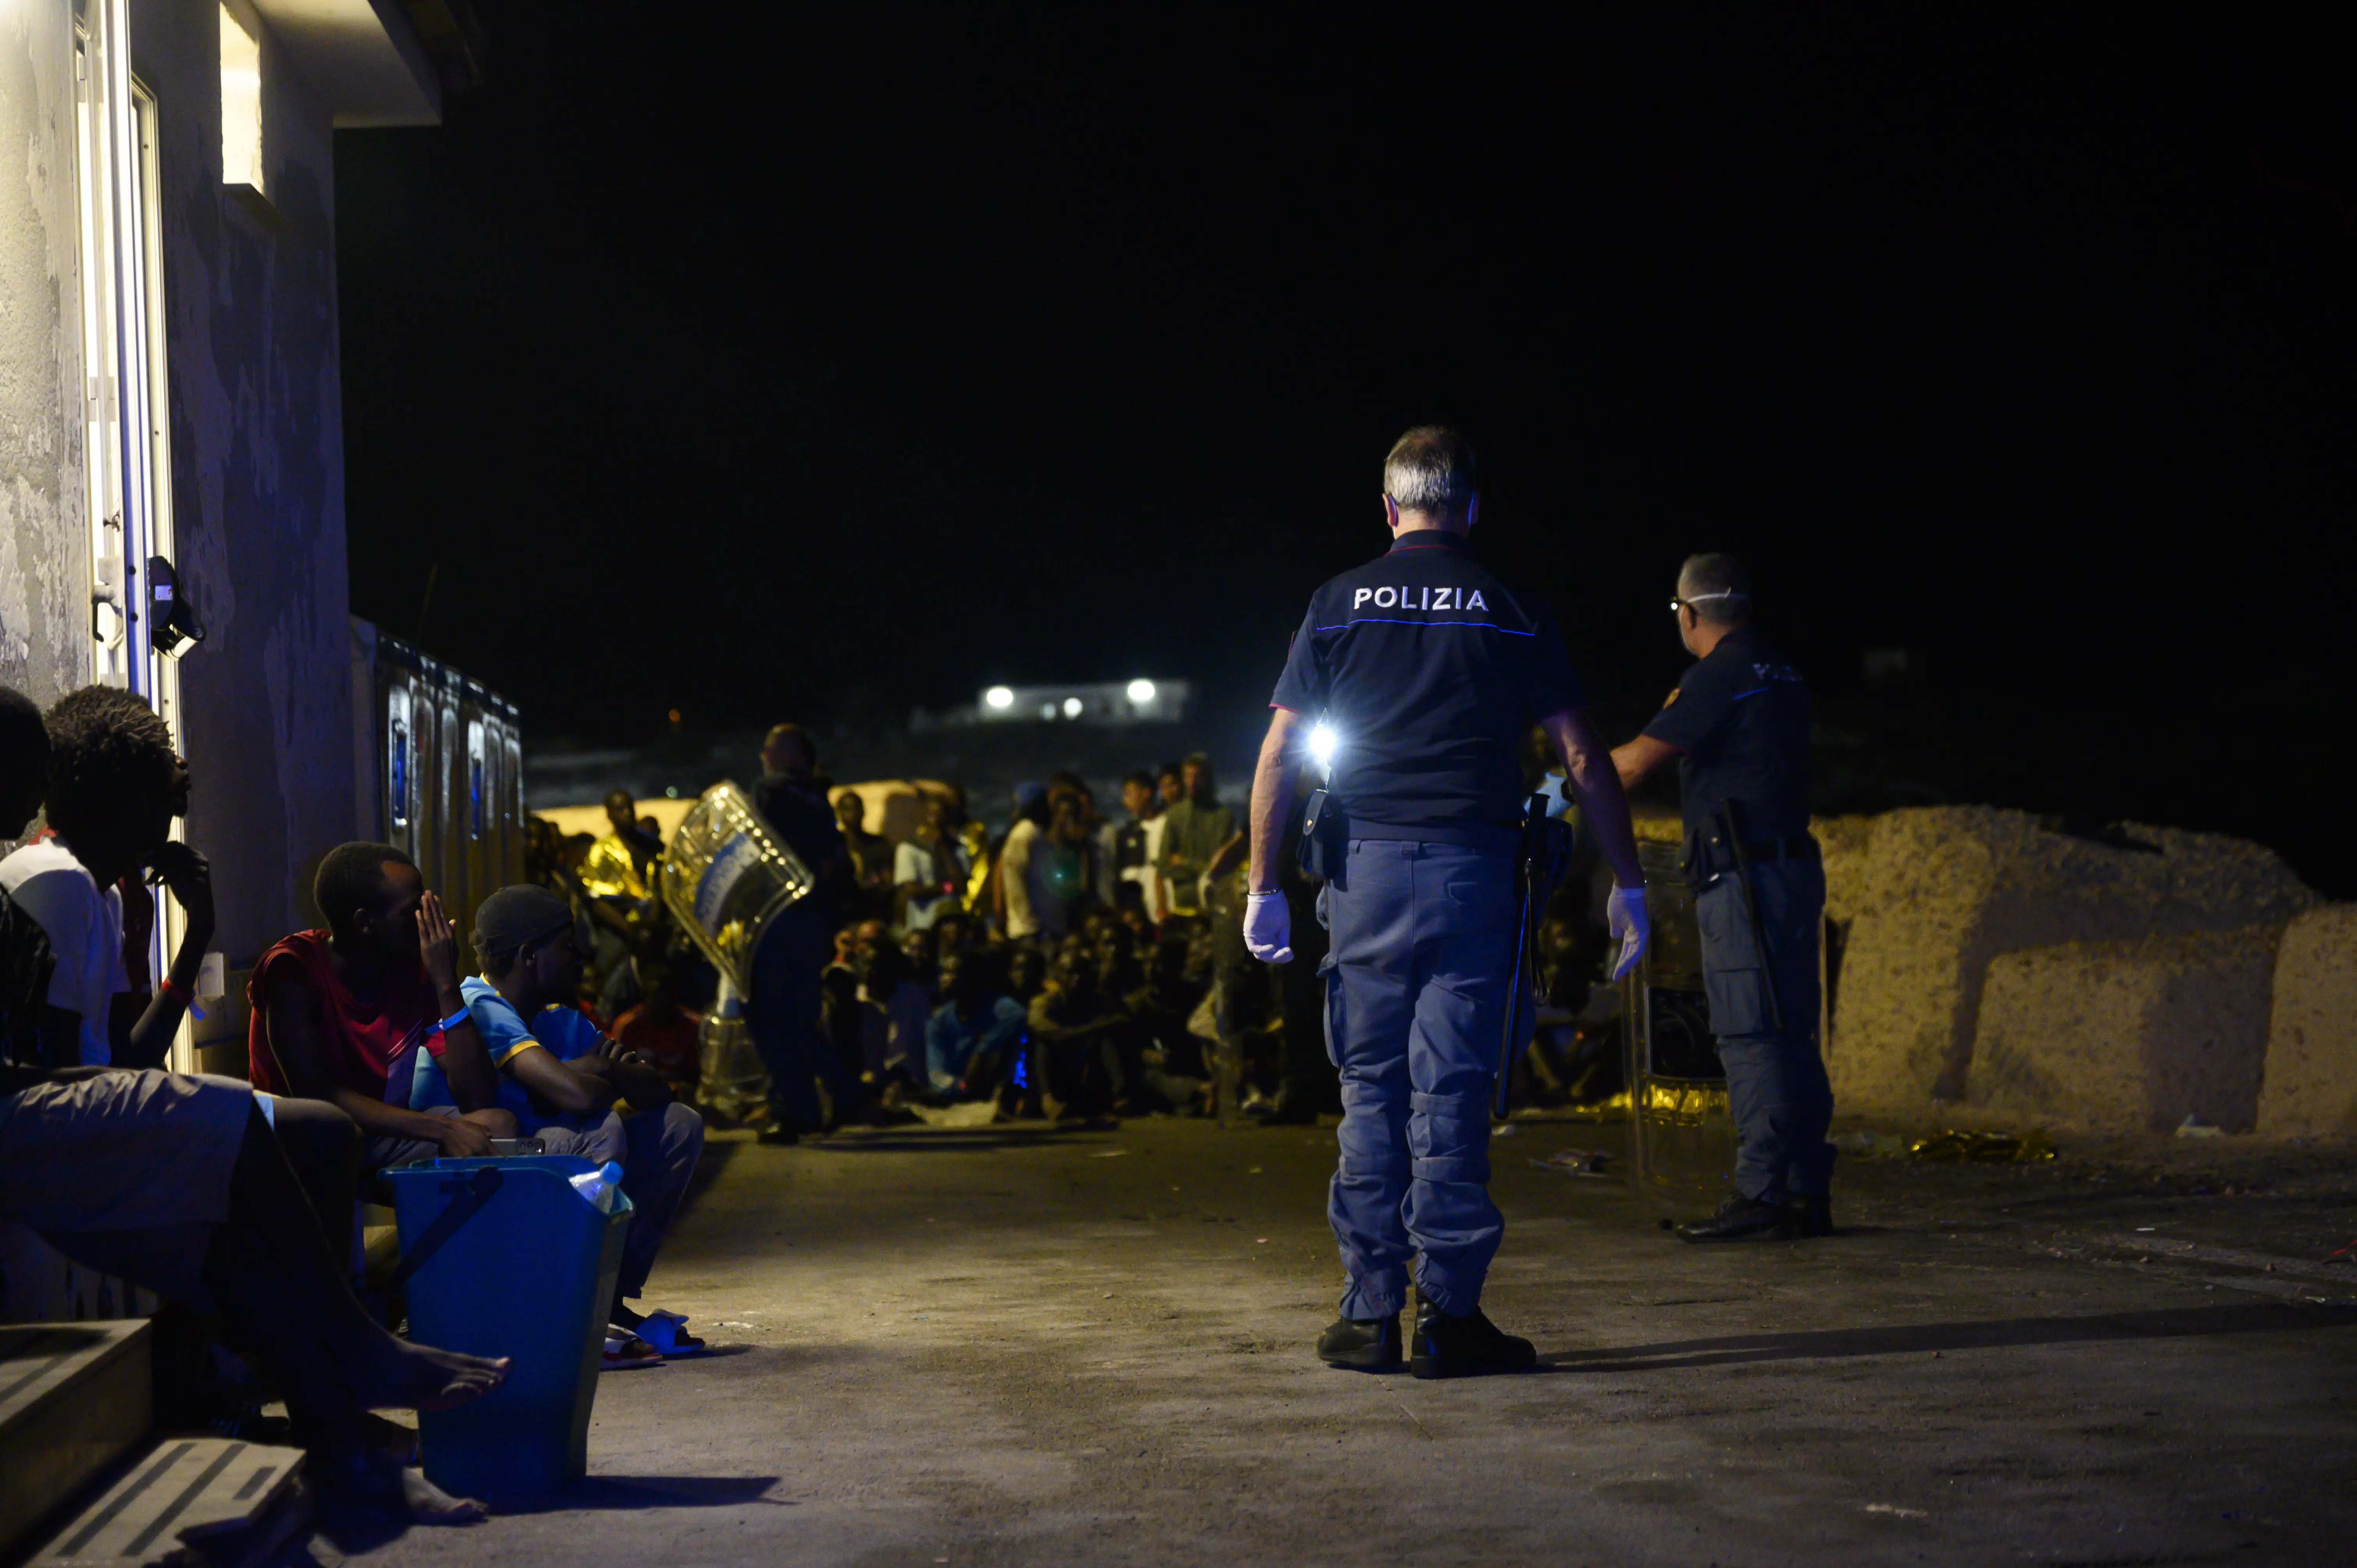 Bundesregierung setzt freiwillige Aufnahme von Migranten aus Italien vorübergehend aus